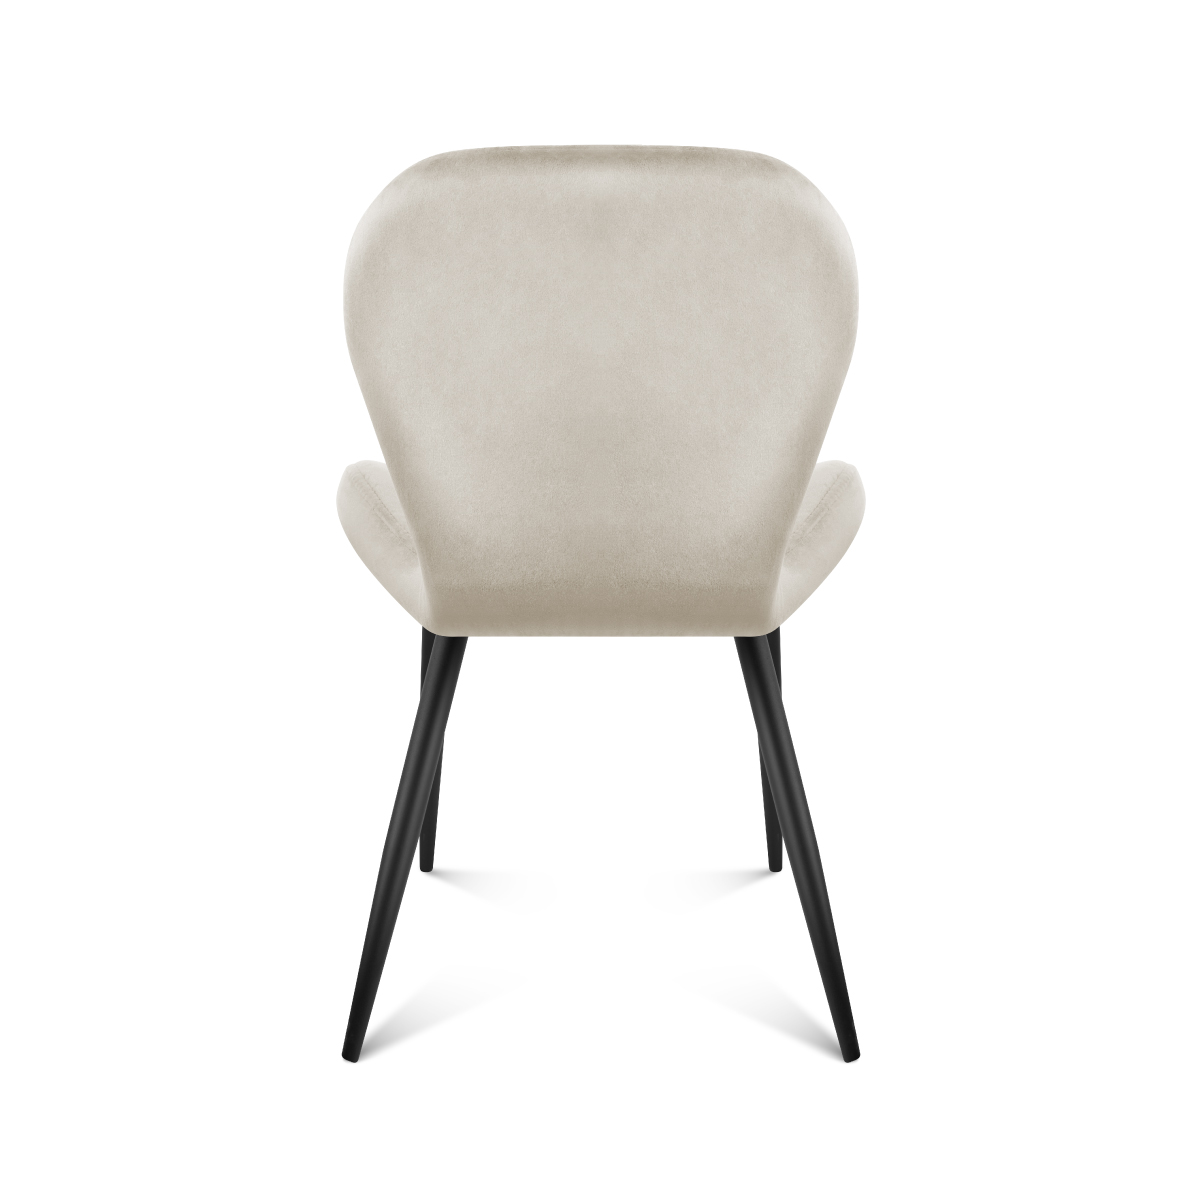 Tył krzesła Mark Adler Prince 2.0 Grey